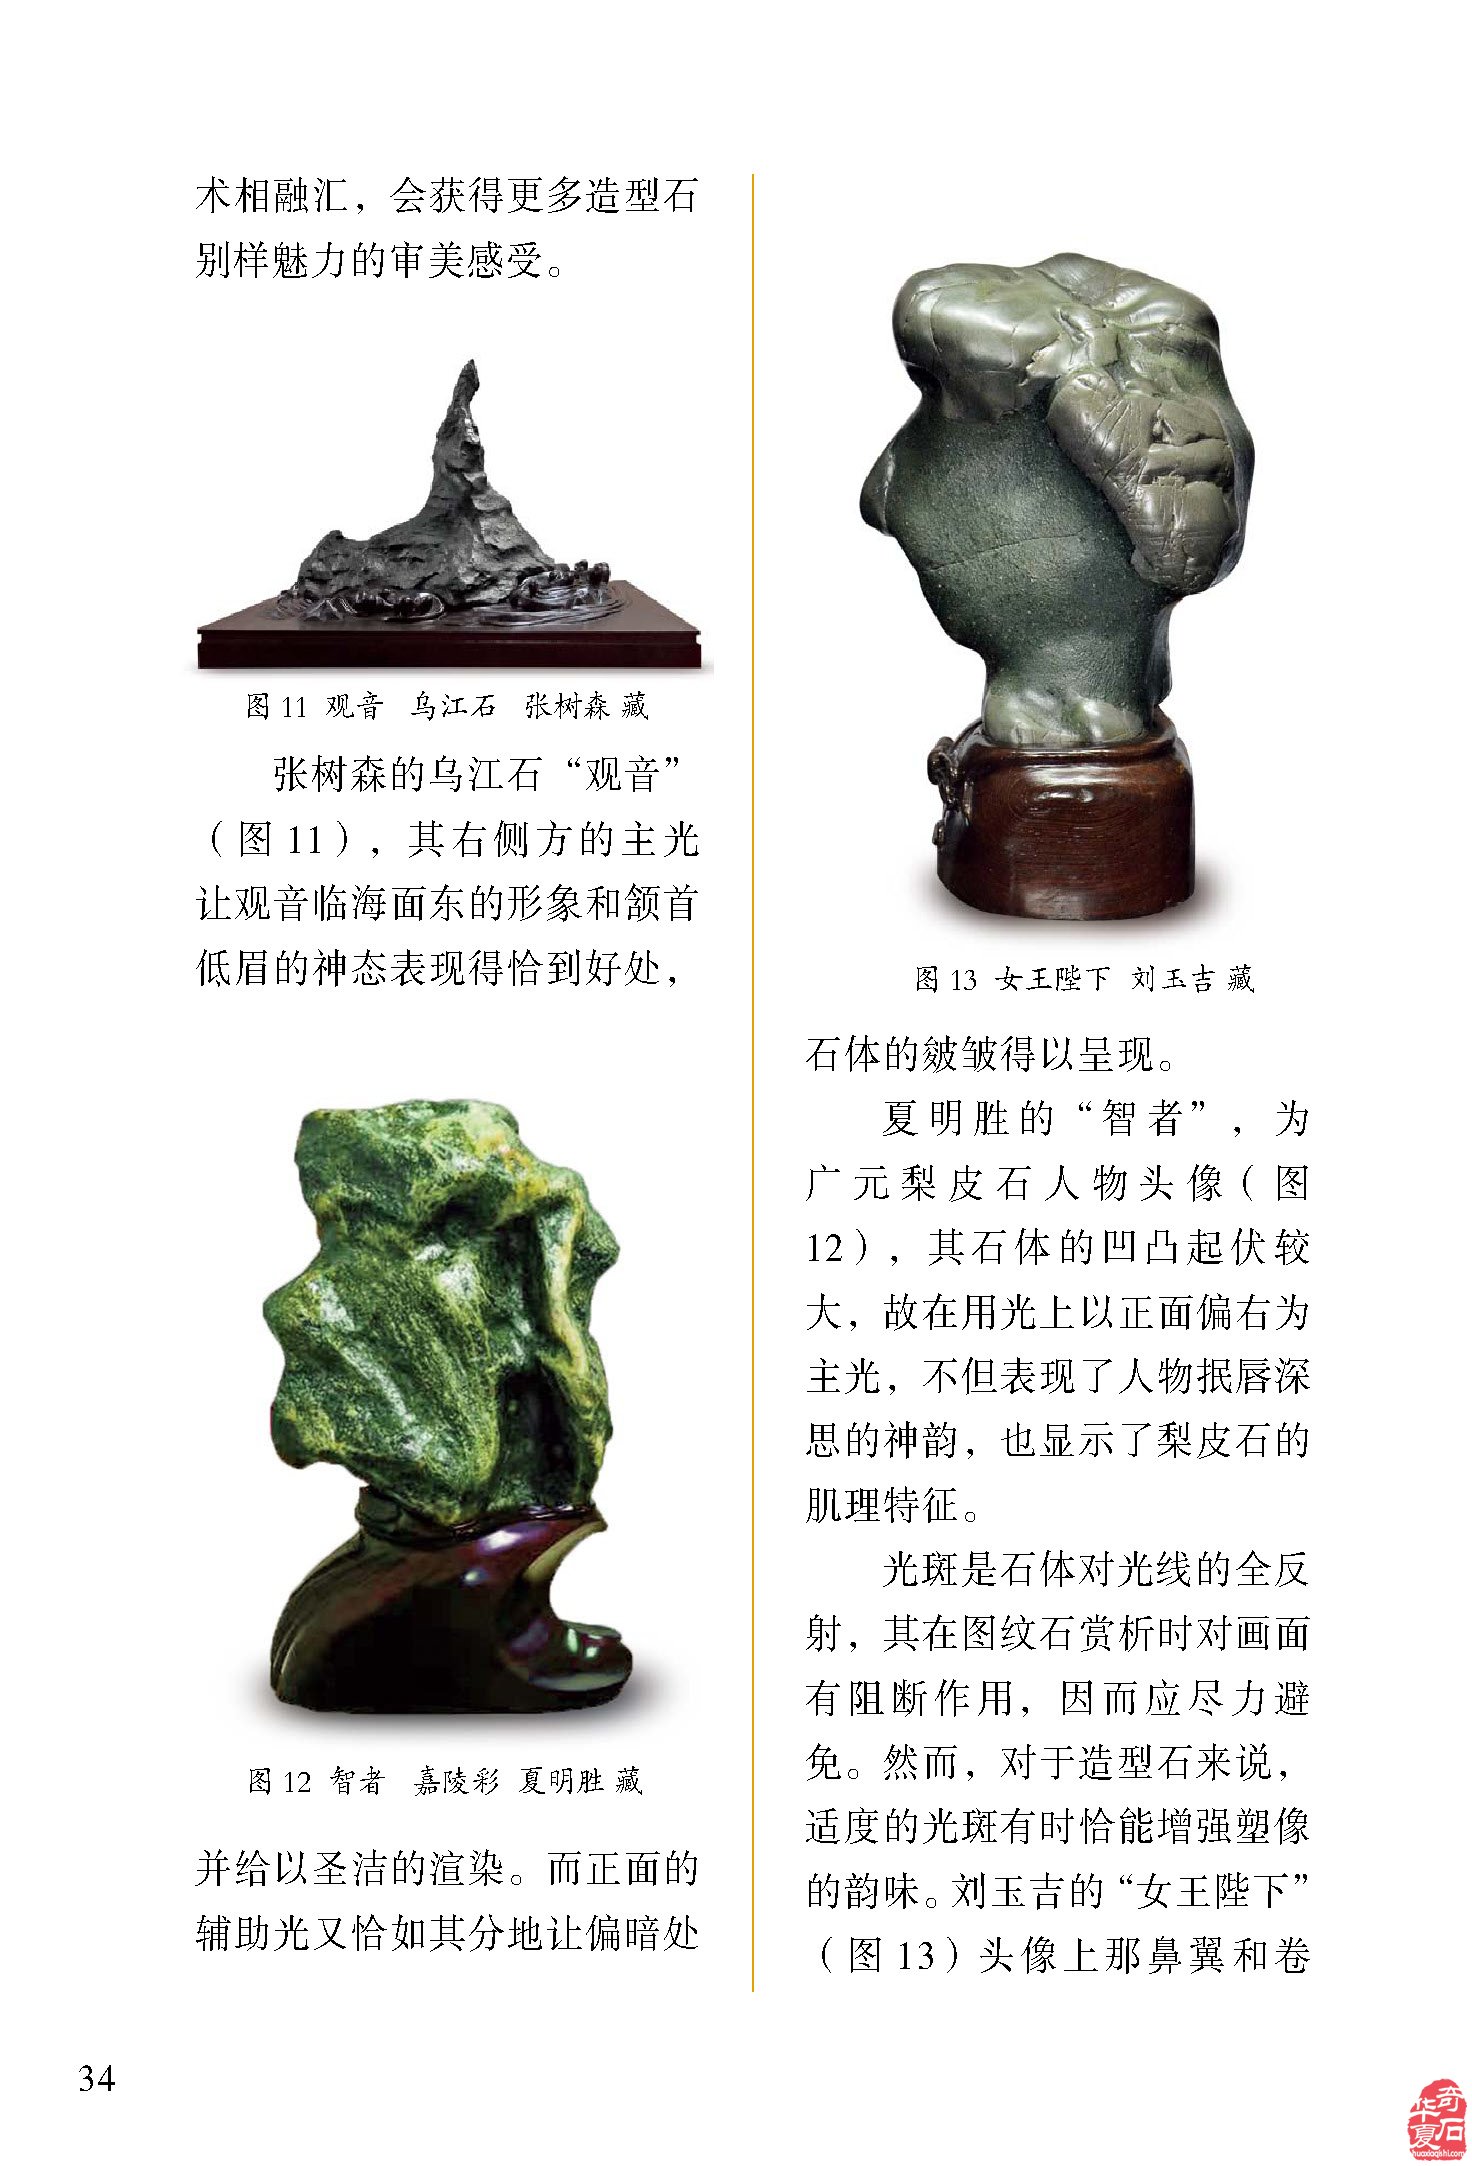 《于公赏石》杂志力推中国造型石大典